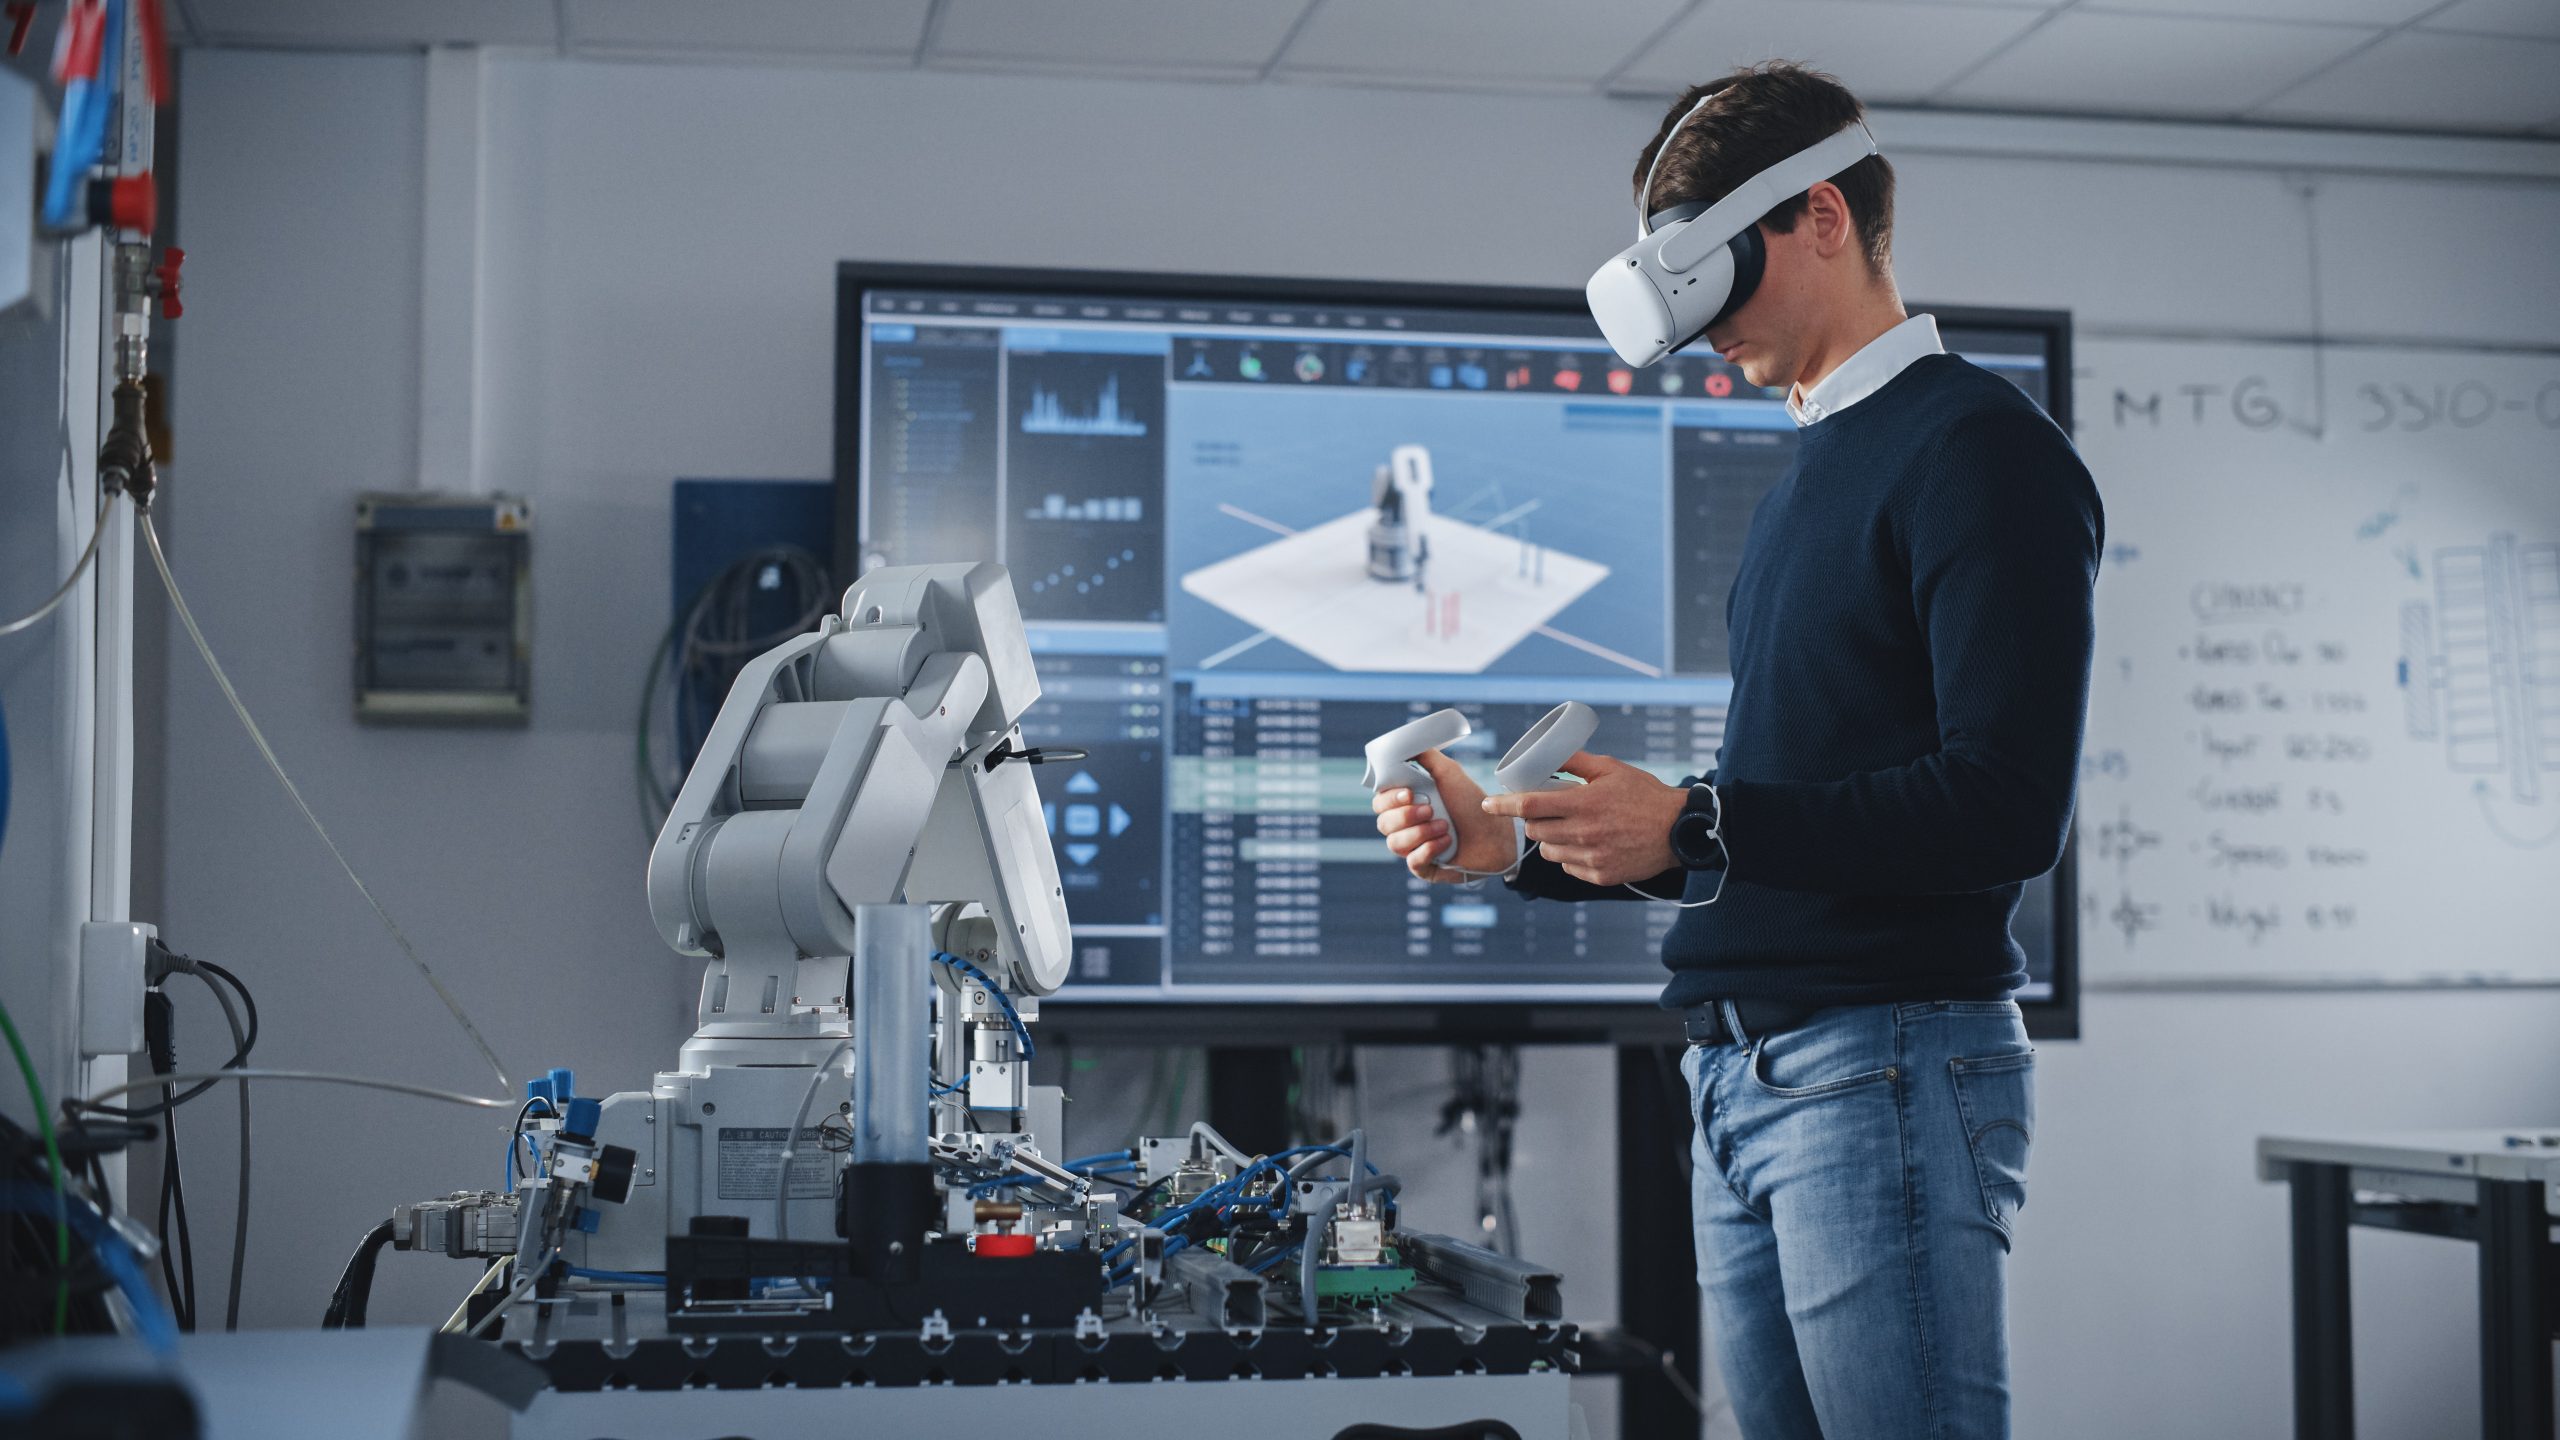 nell'aula di un'università tecnologica, un uomo che indossa un visore VR e tiene in mano dei controller è concentrato nei suoi studi di robotica.